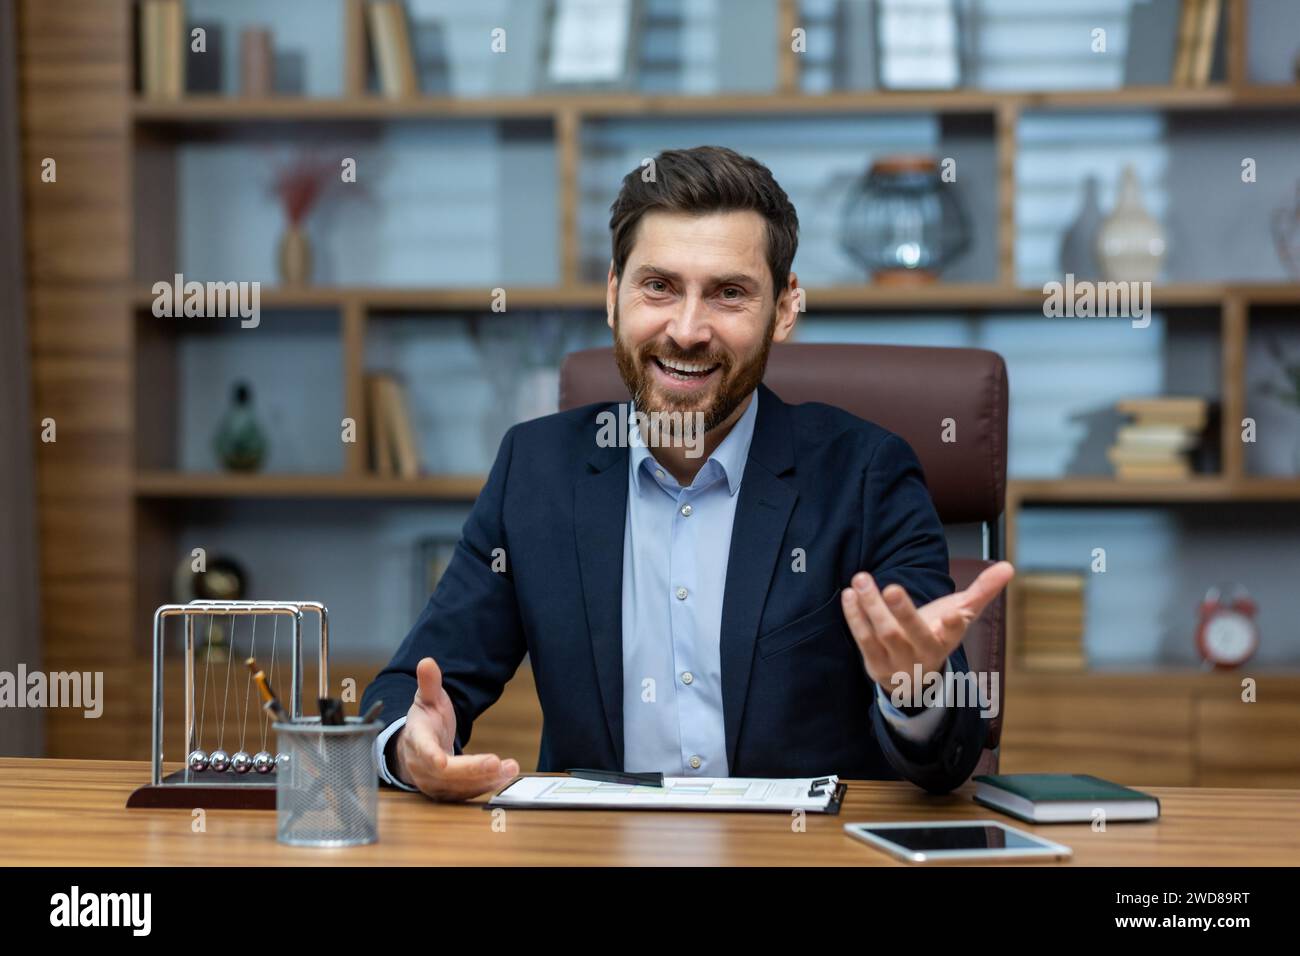 Professionnel mature souriant dans un bureau à domicile bien aménagé ayant une discussion amicale ou une entrevue Banque D'Images